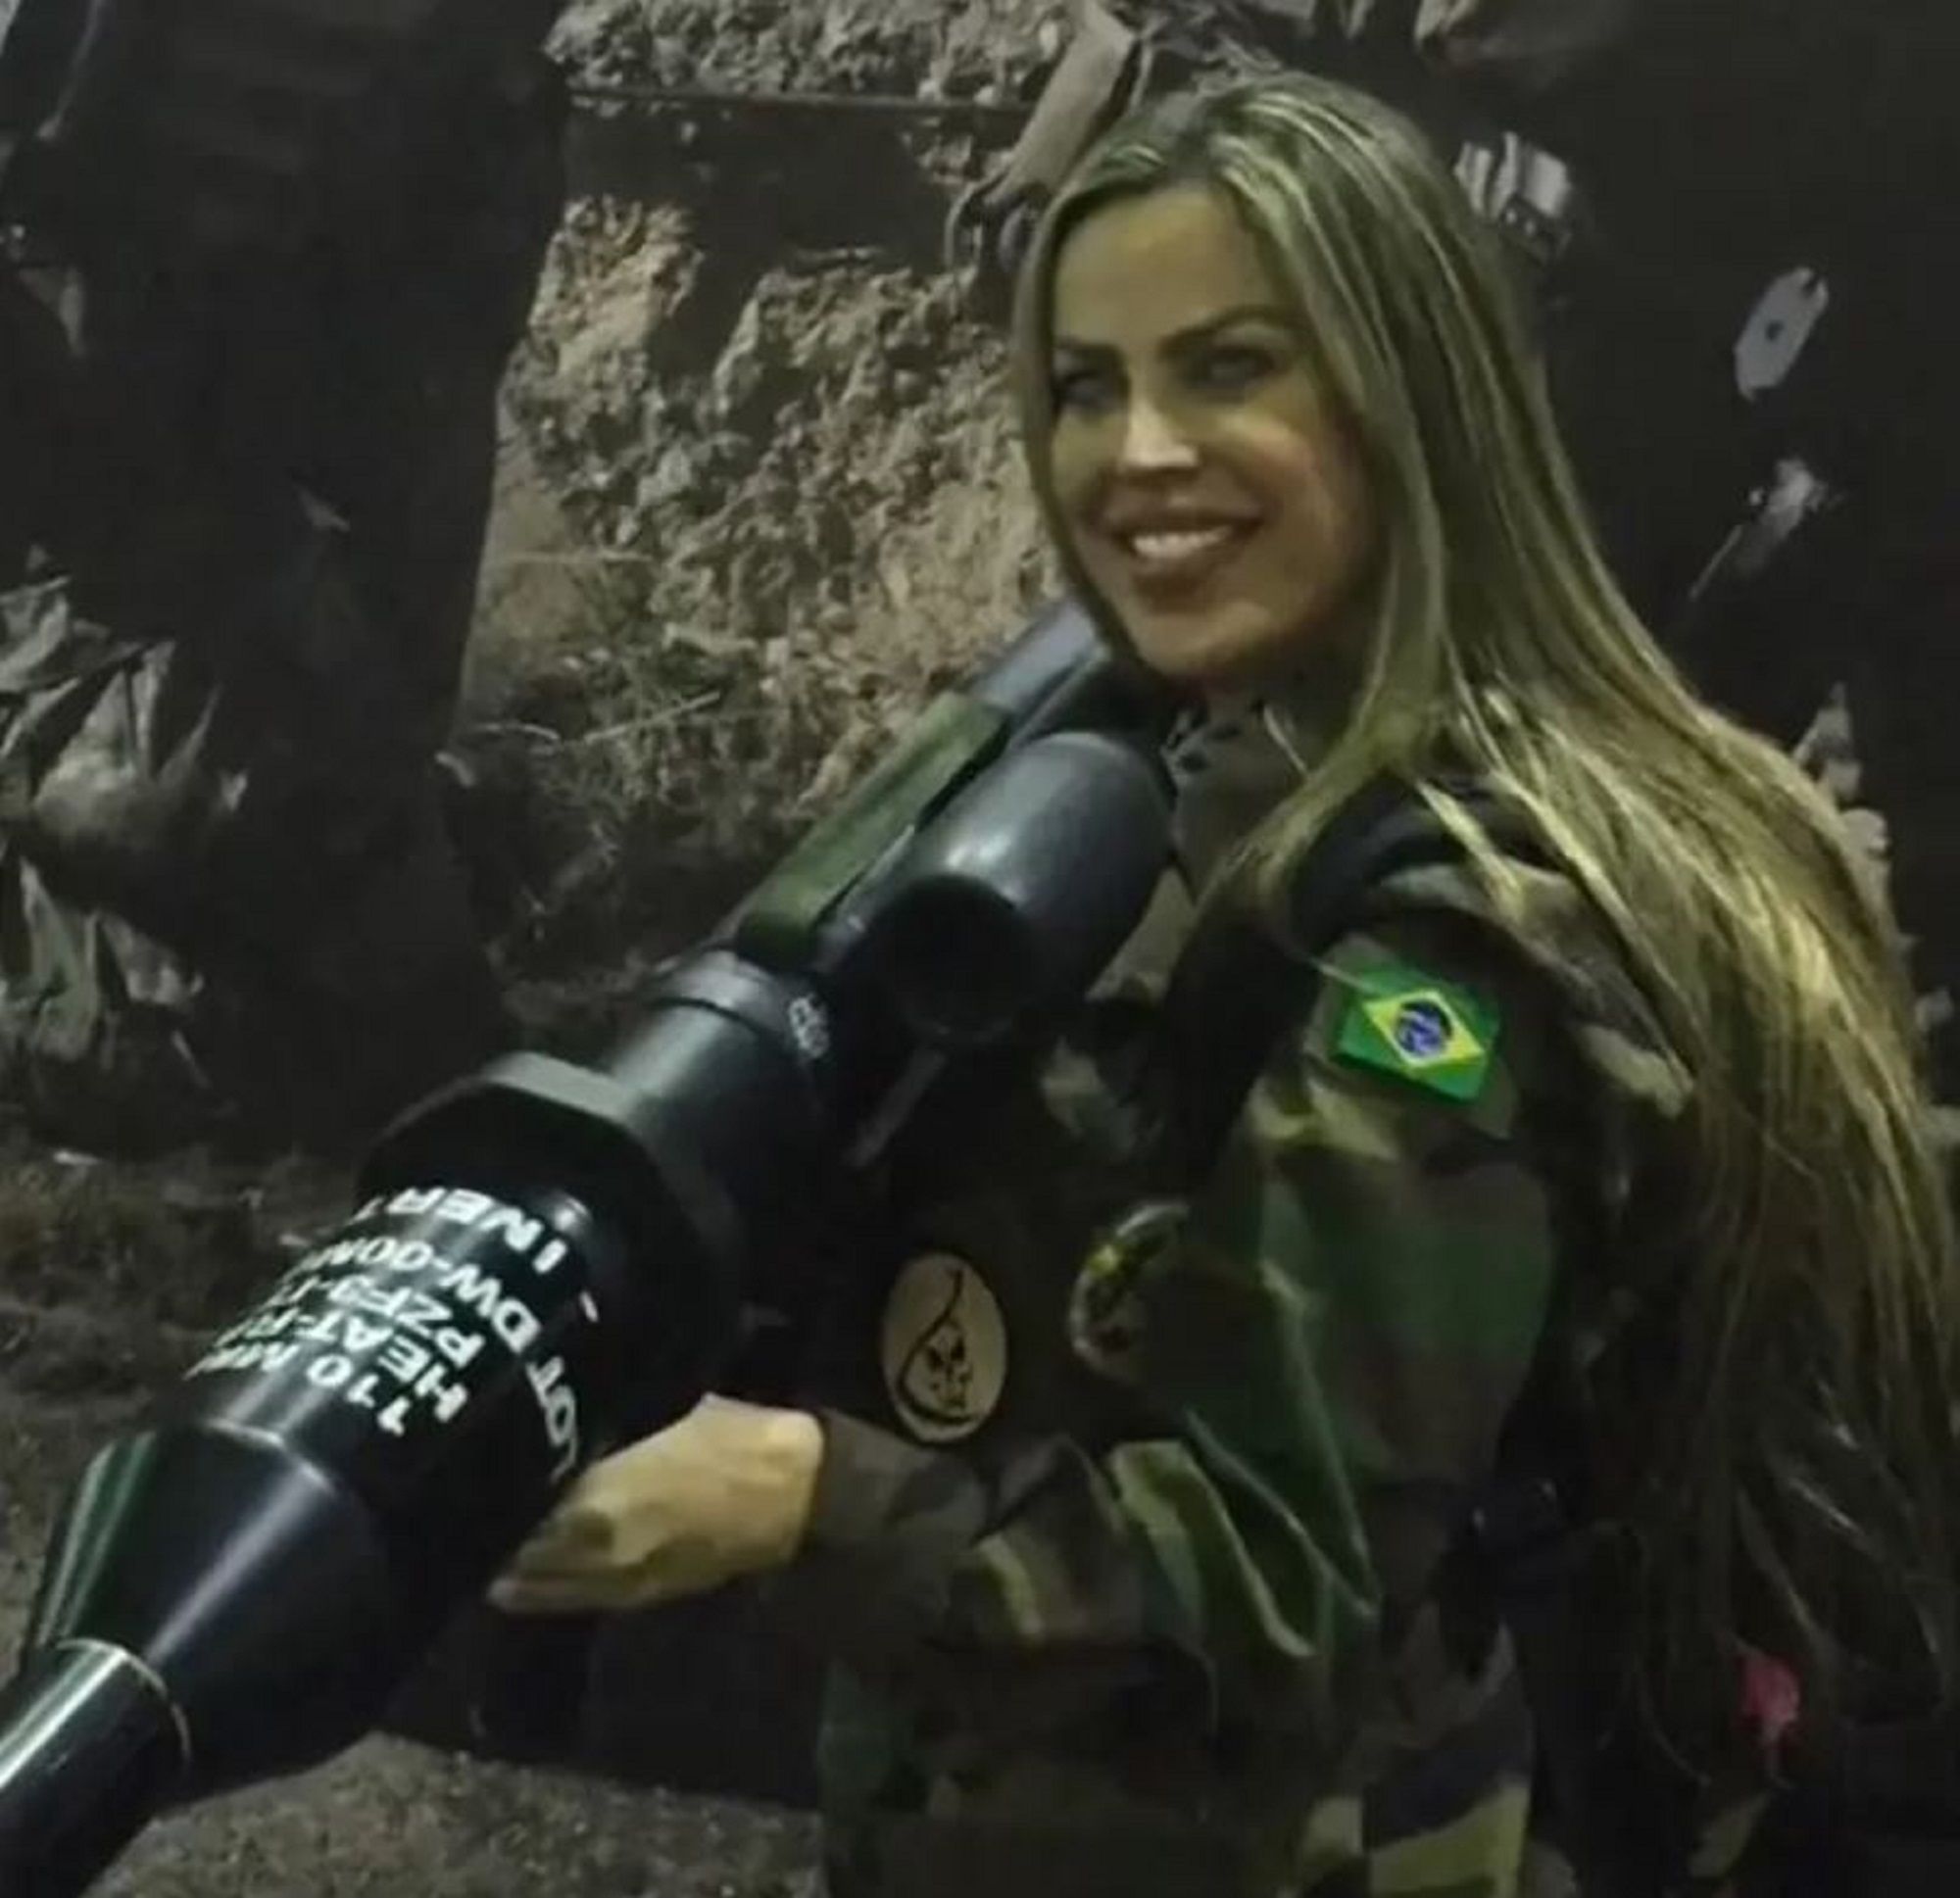 Thalita do Valle exmodel franctiradora mor guerra ucraina